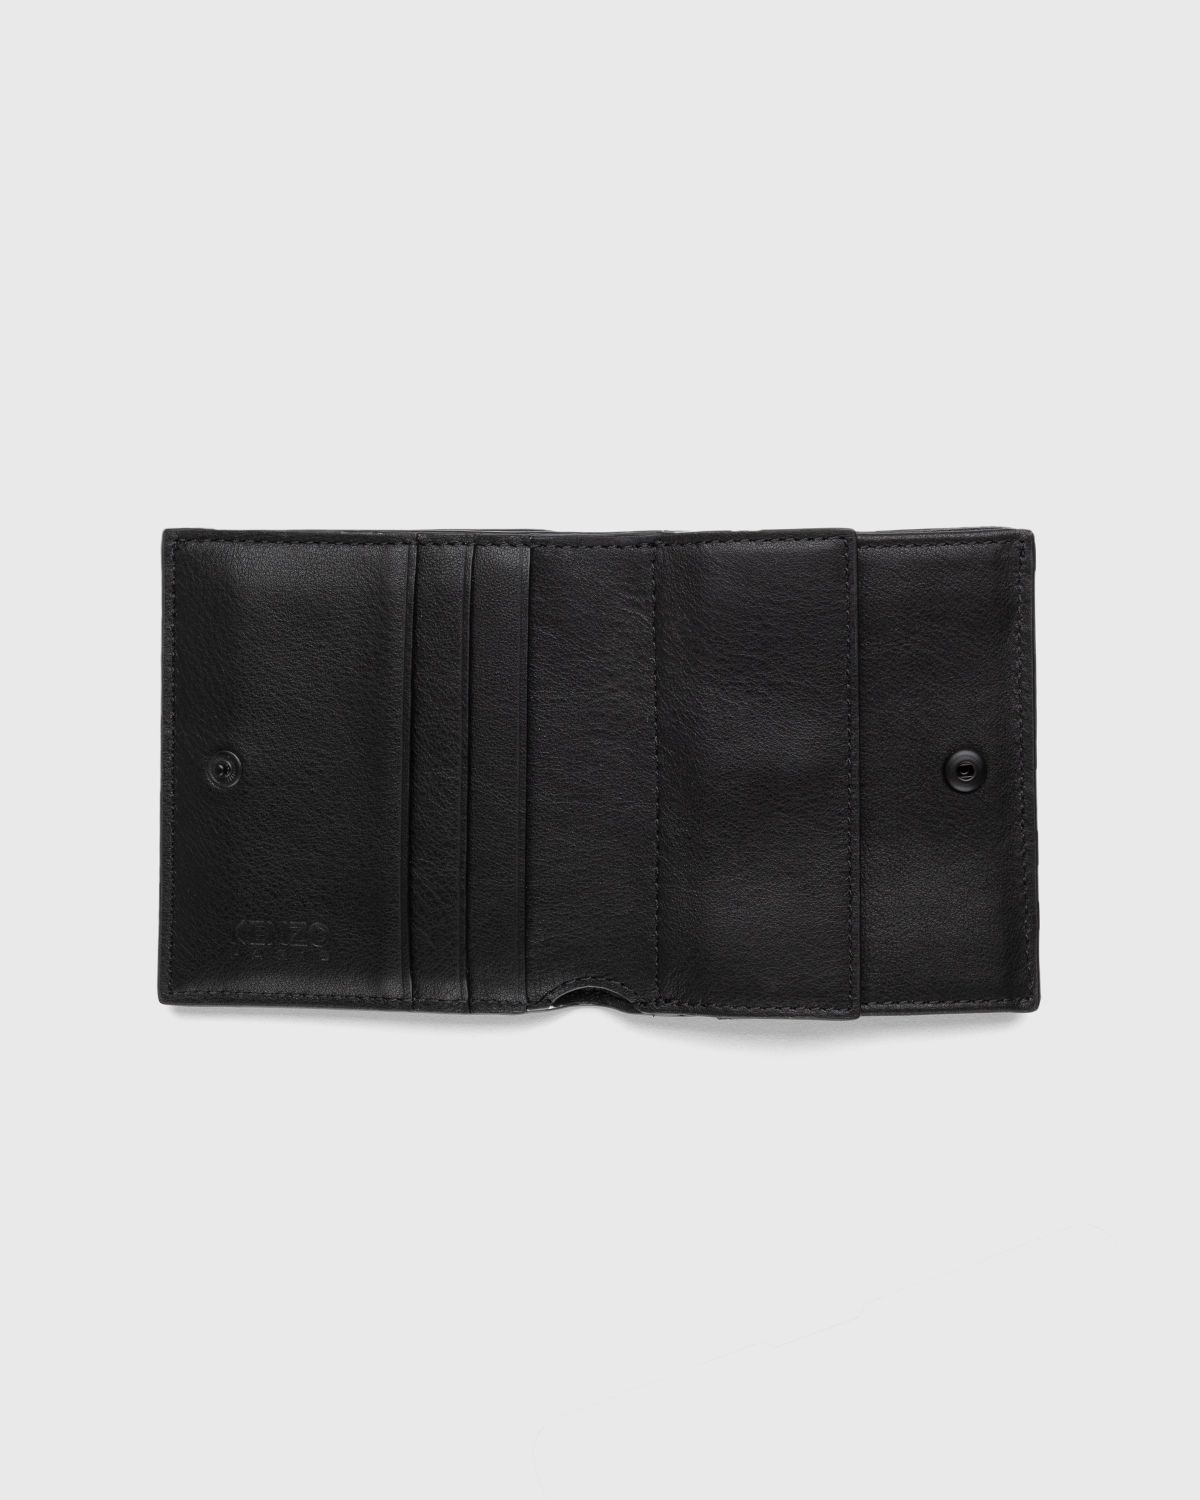 Kenzo – Crest Foldable Wallet Black - Wallets - Black - Image 2